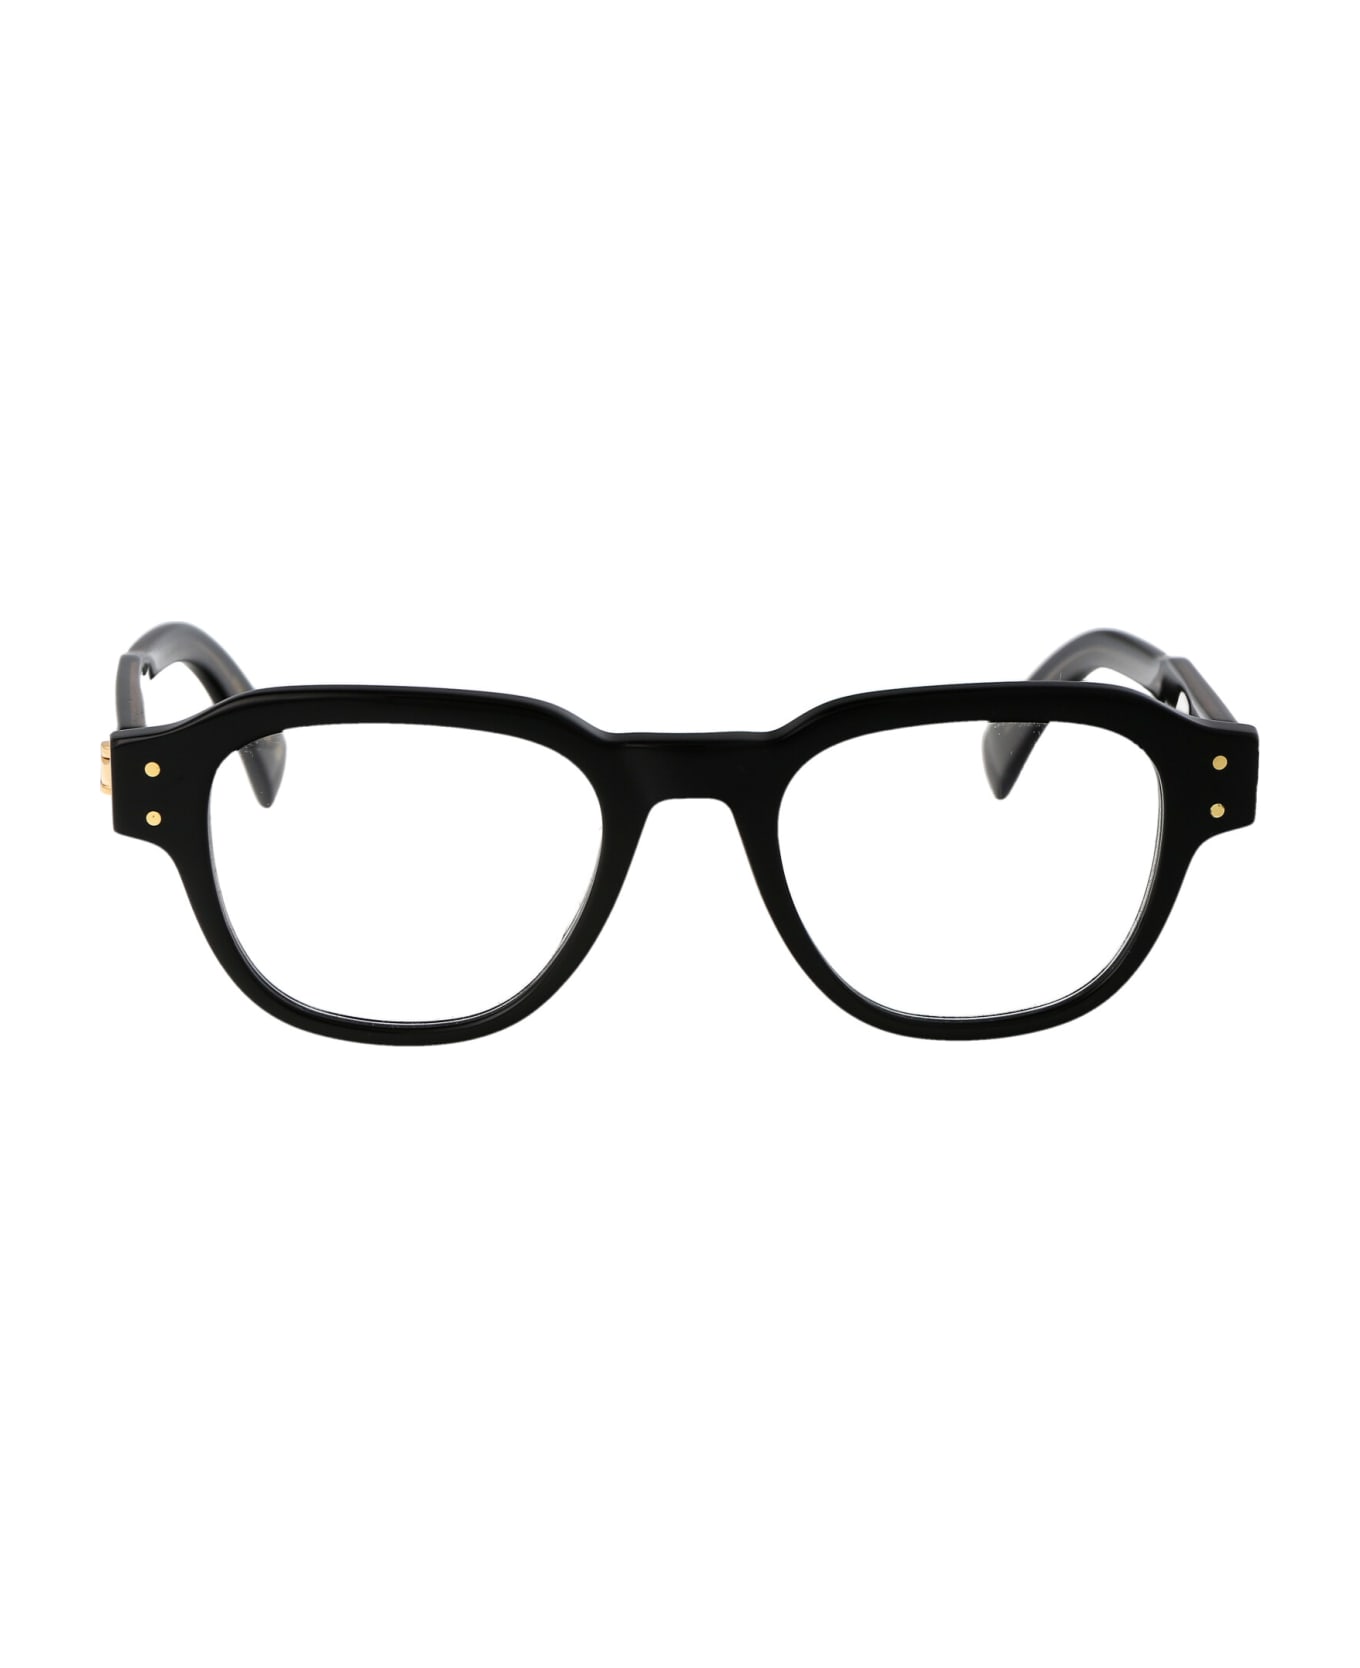 Dunhill Du0048o Glasses - 001 BLACK BLACK TRANSPARENT